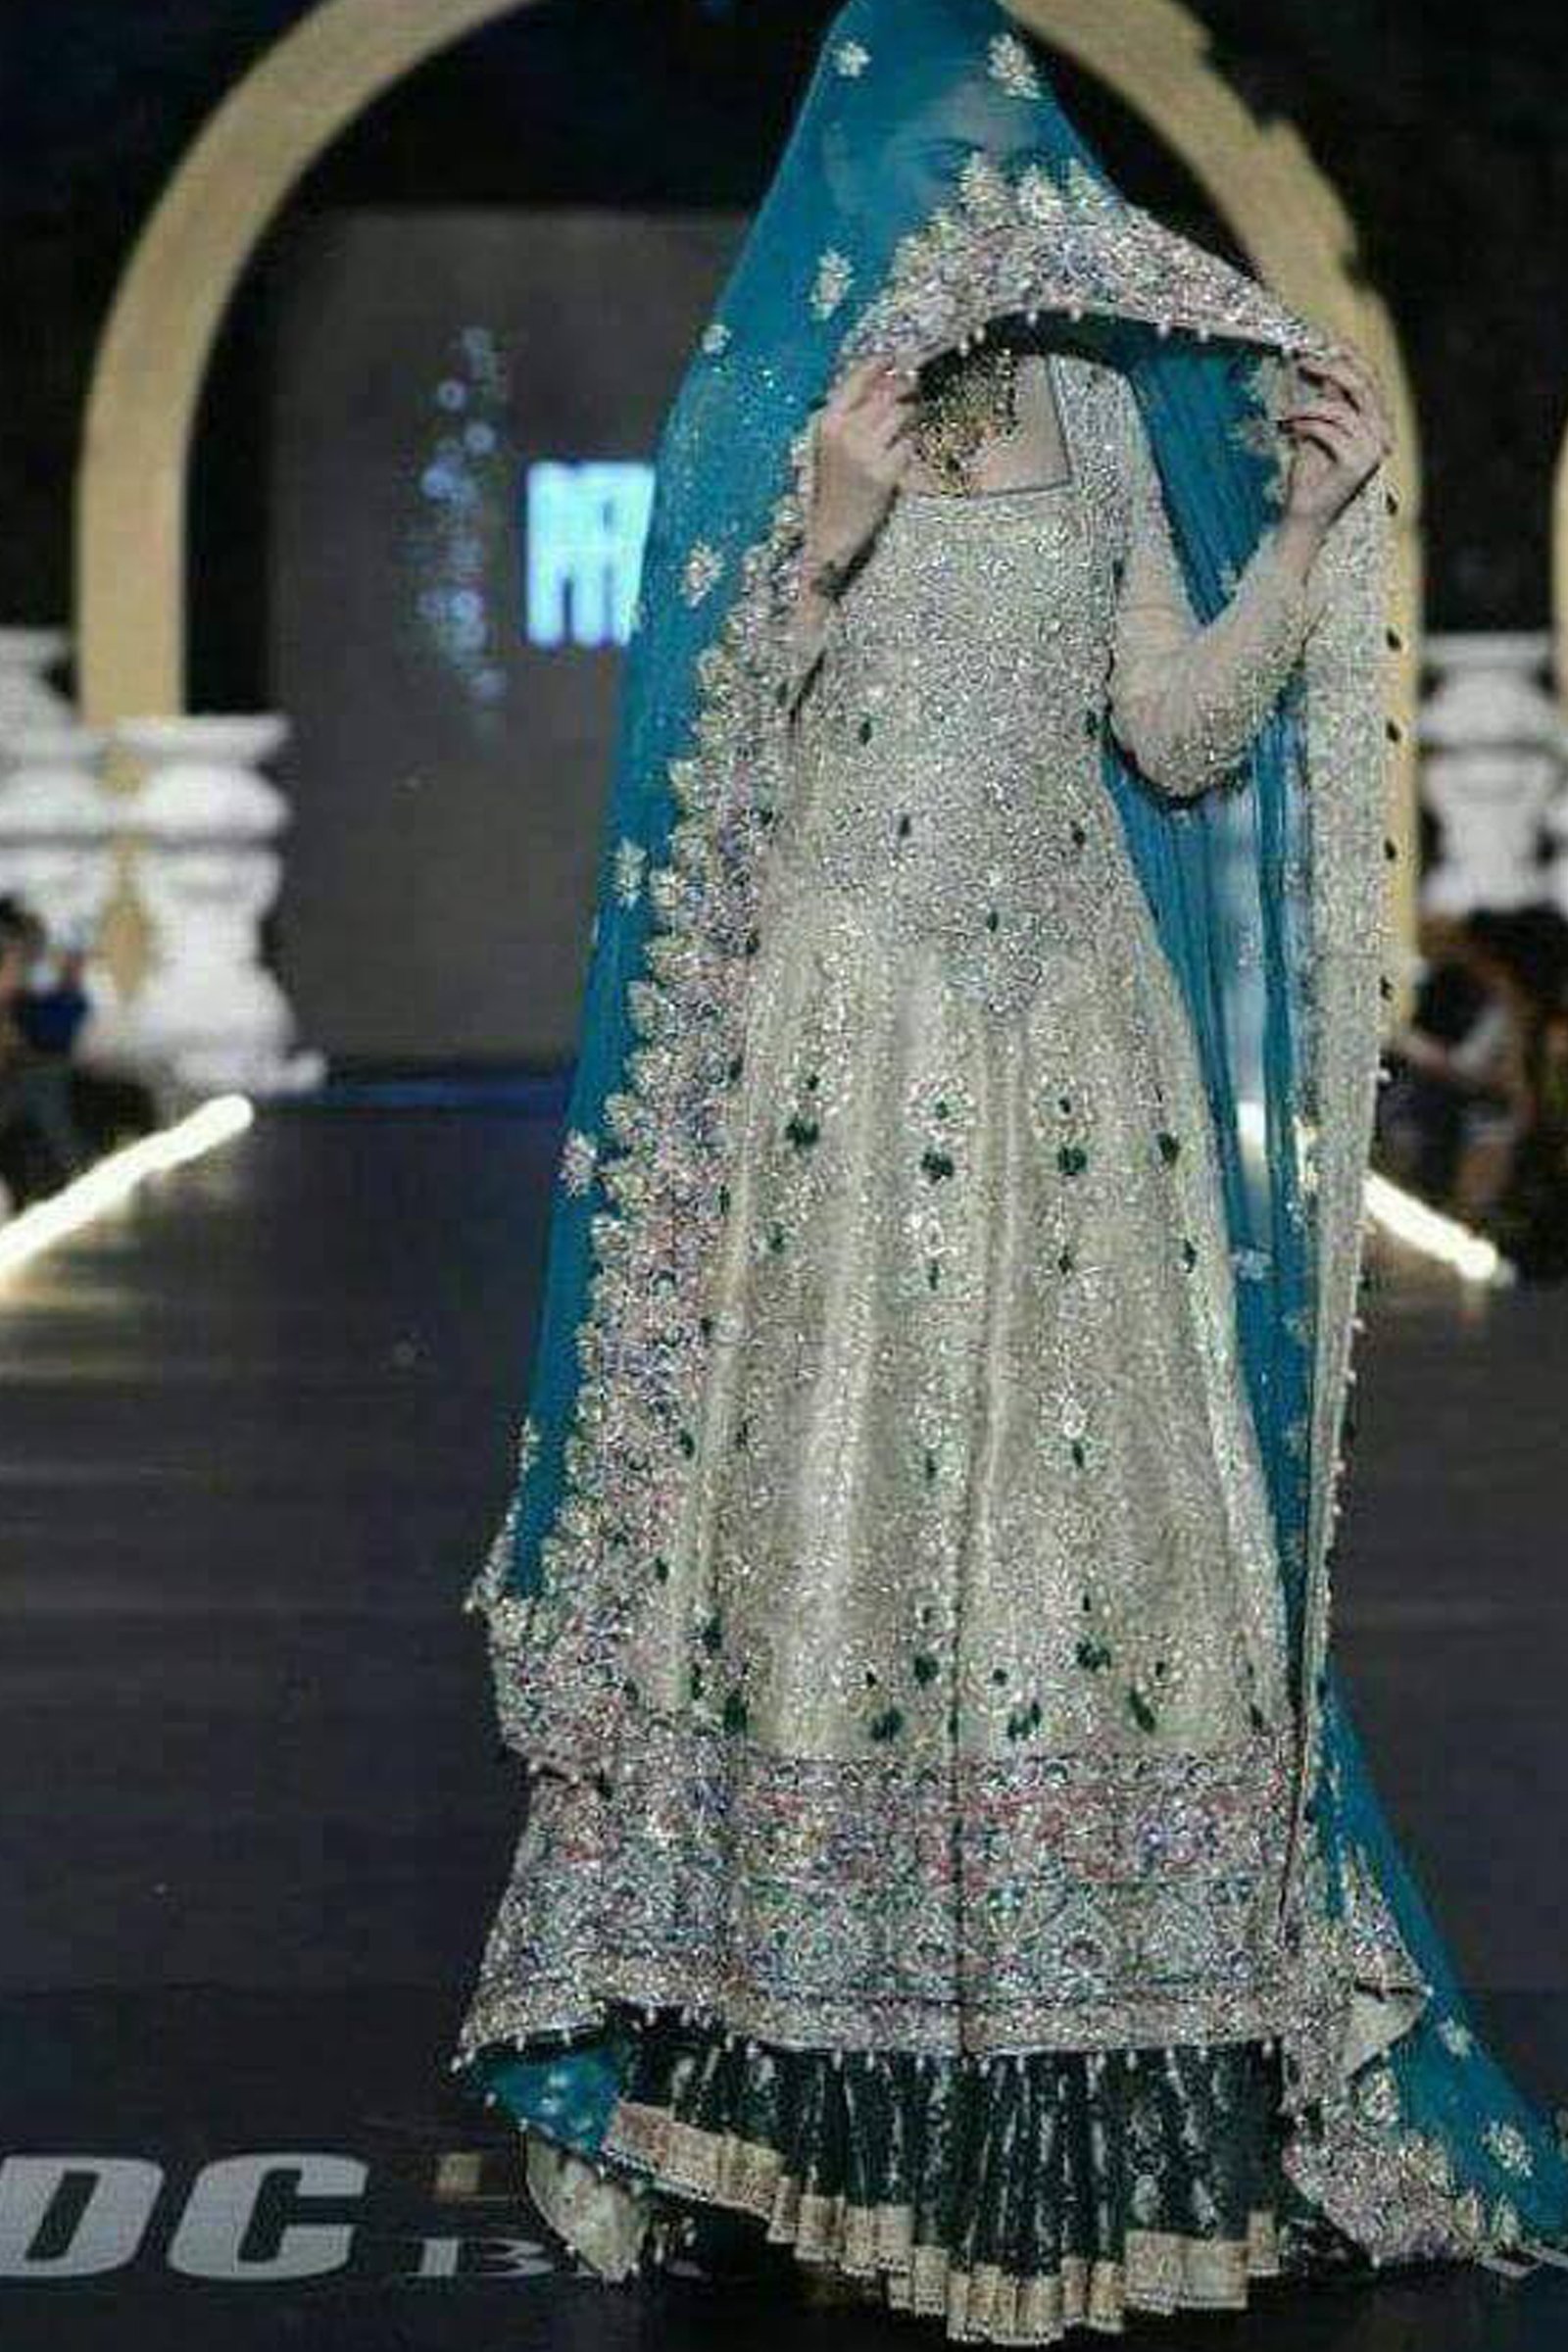 royal blue dresses pakistani, royal blue pakistani designer dresses, royal blue pakistani wedding dresses, royal blue pakistani bridal dresses, royal blue frocks pakistani, pakistani royal blue dresses, royal blue wedding dresses pakistani, pakistani dresses in royal blue colour, royal blue pakistani dresses images